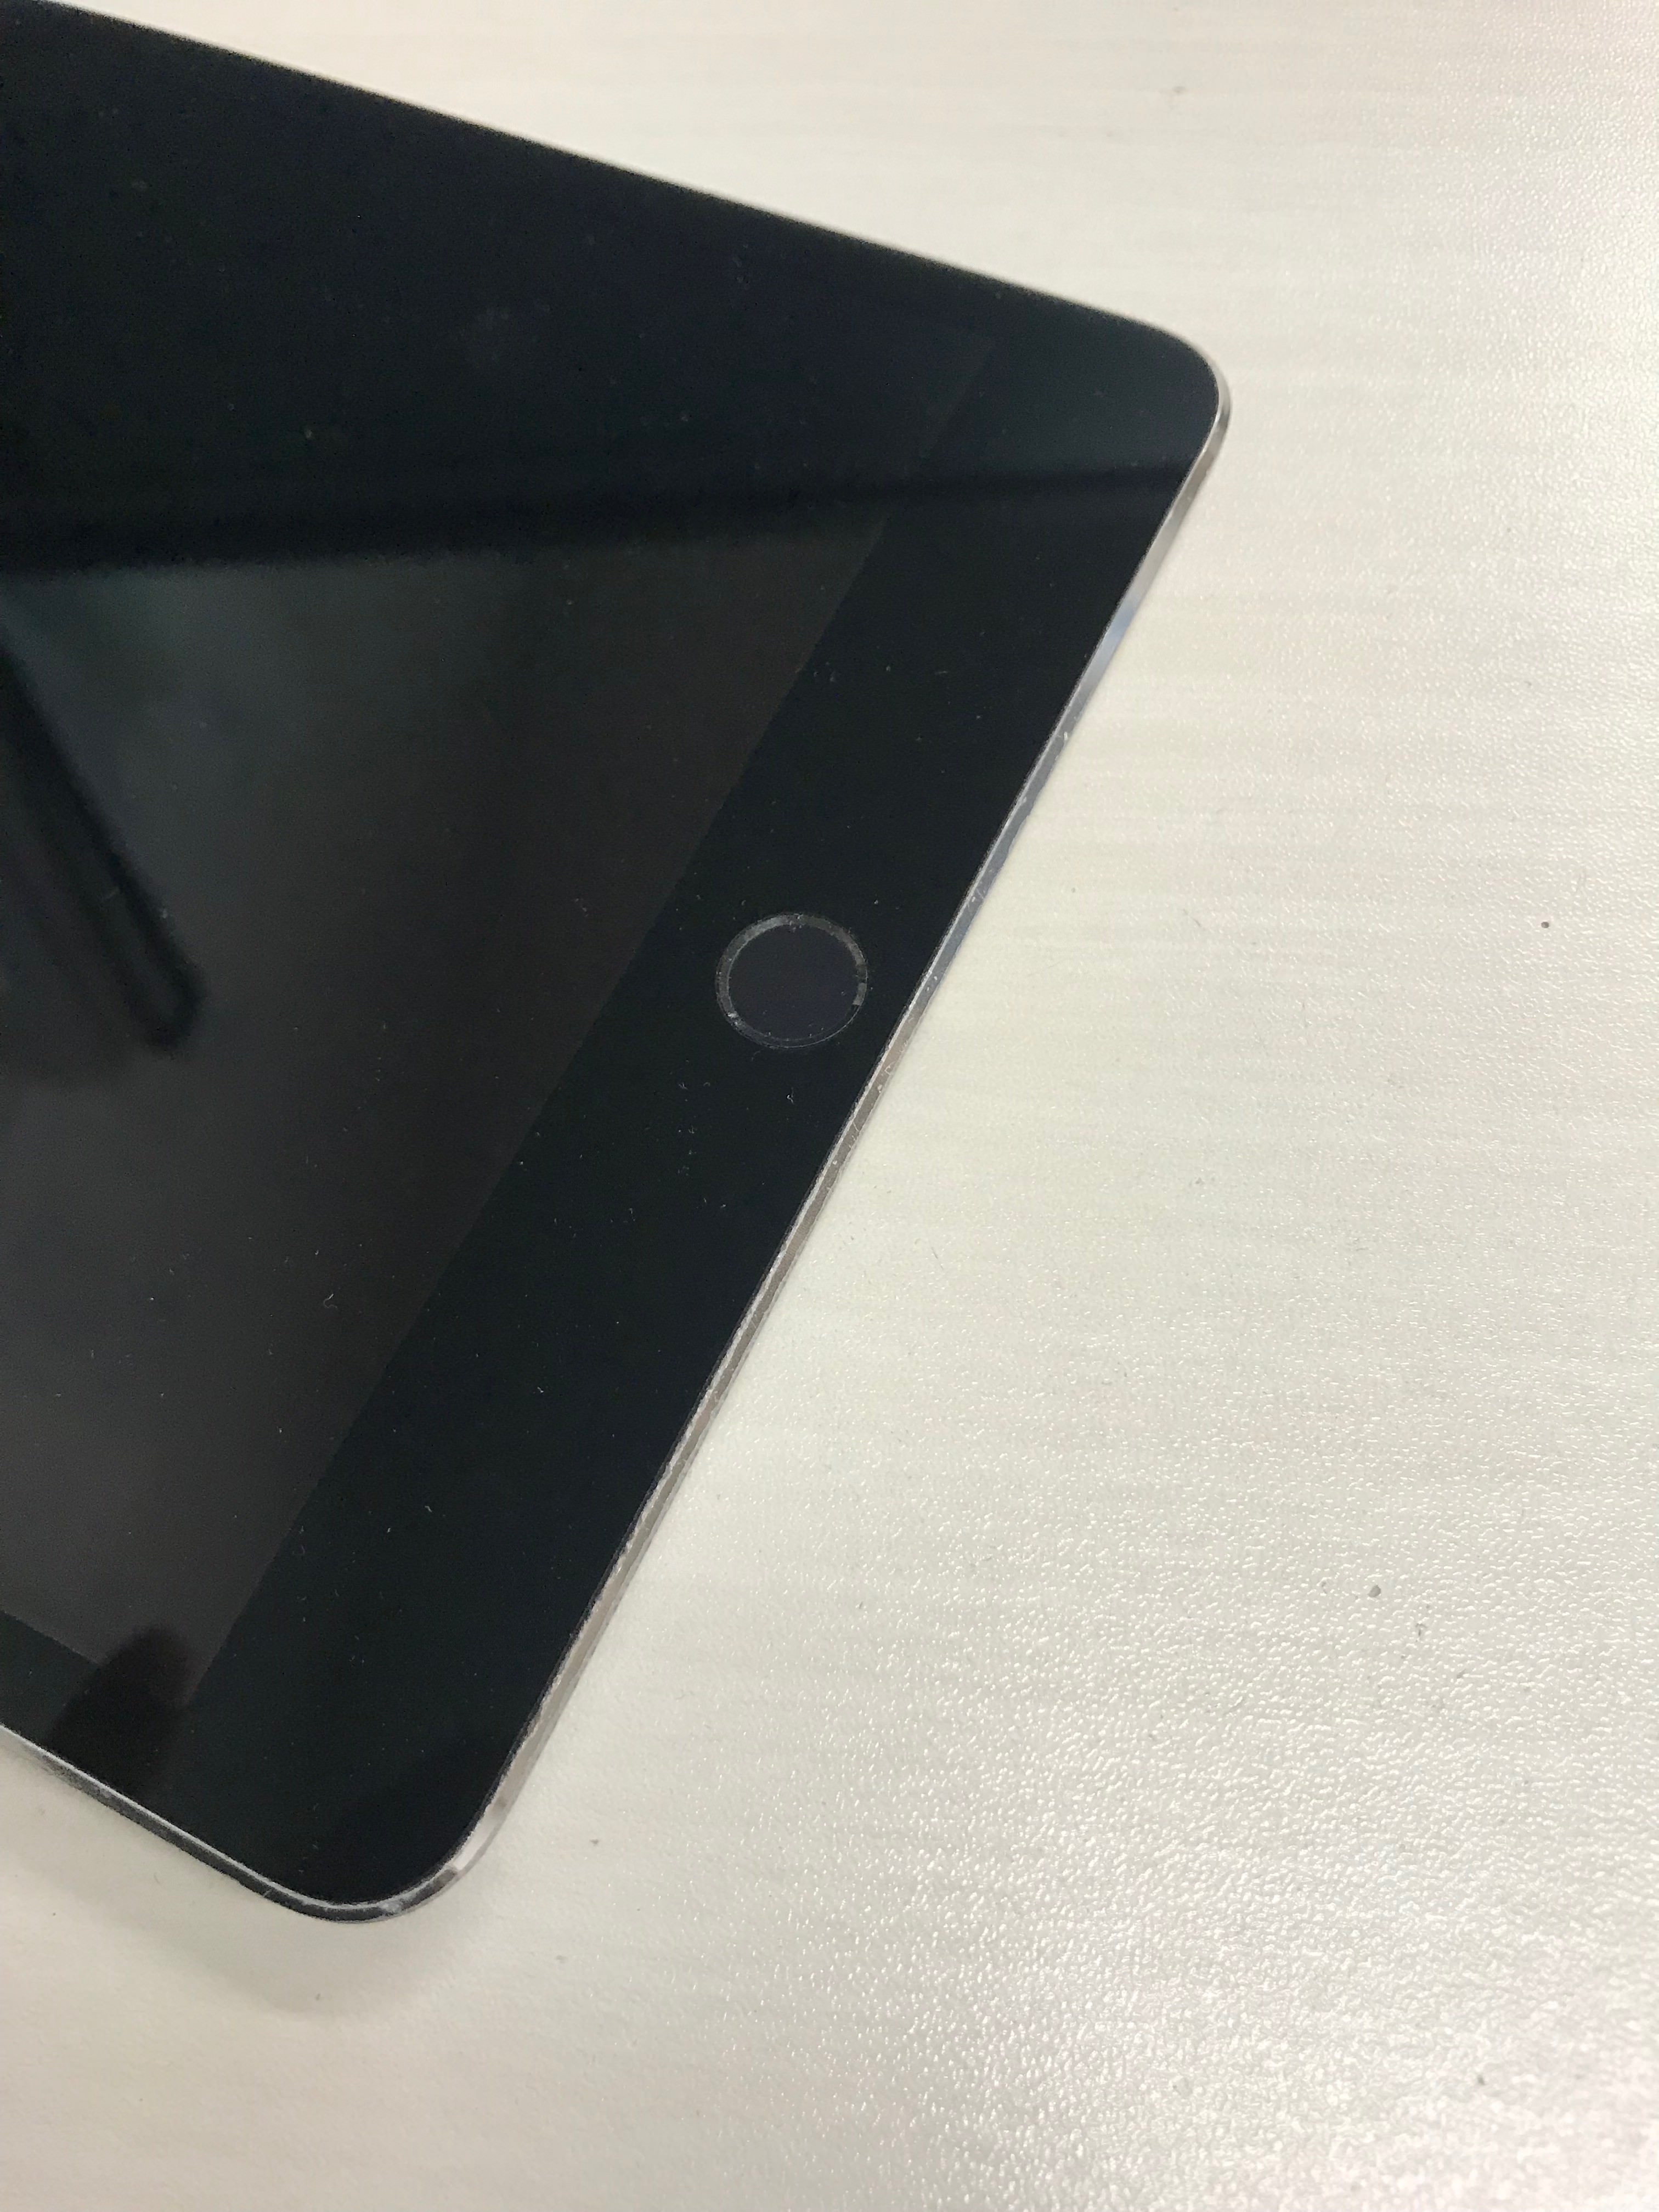 iPadのボタン陥没は修理で直せます。 | スマホ・iphone修理のスマ ...